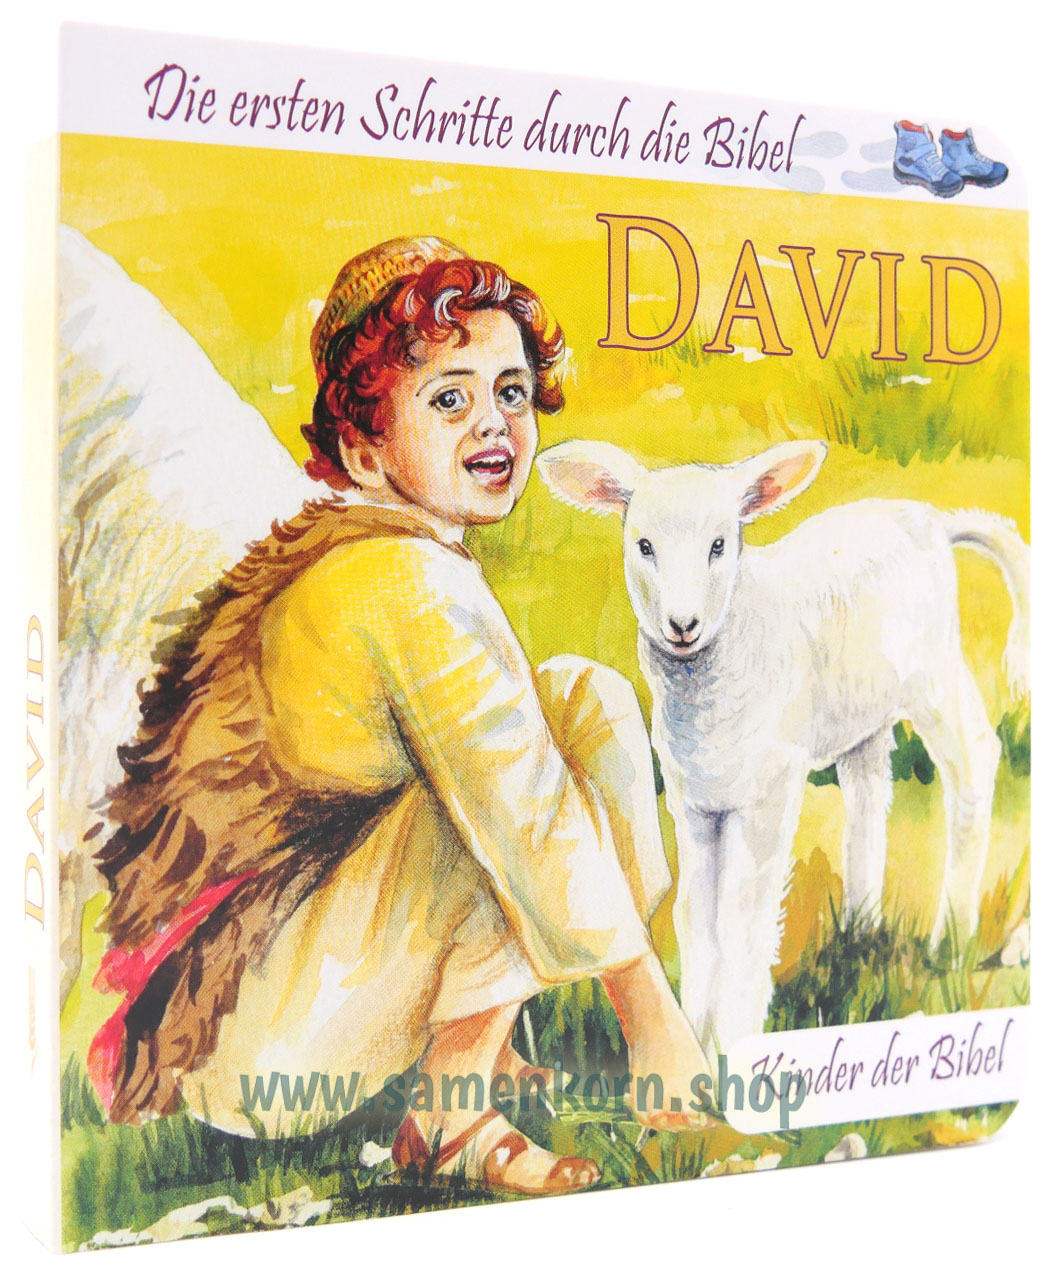 David - Kinder der Bibel